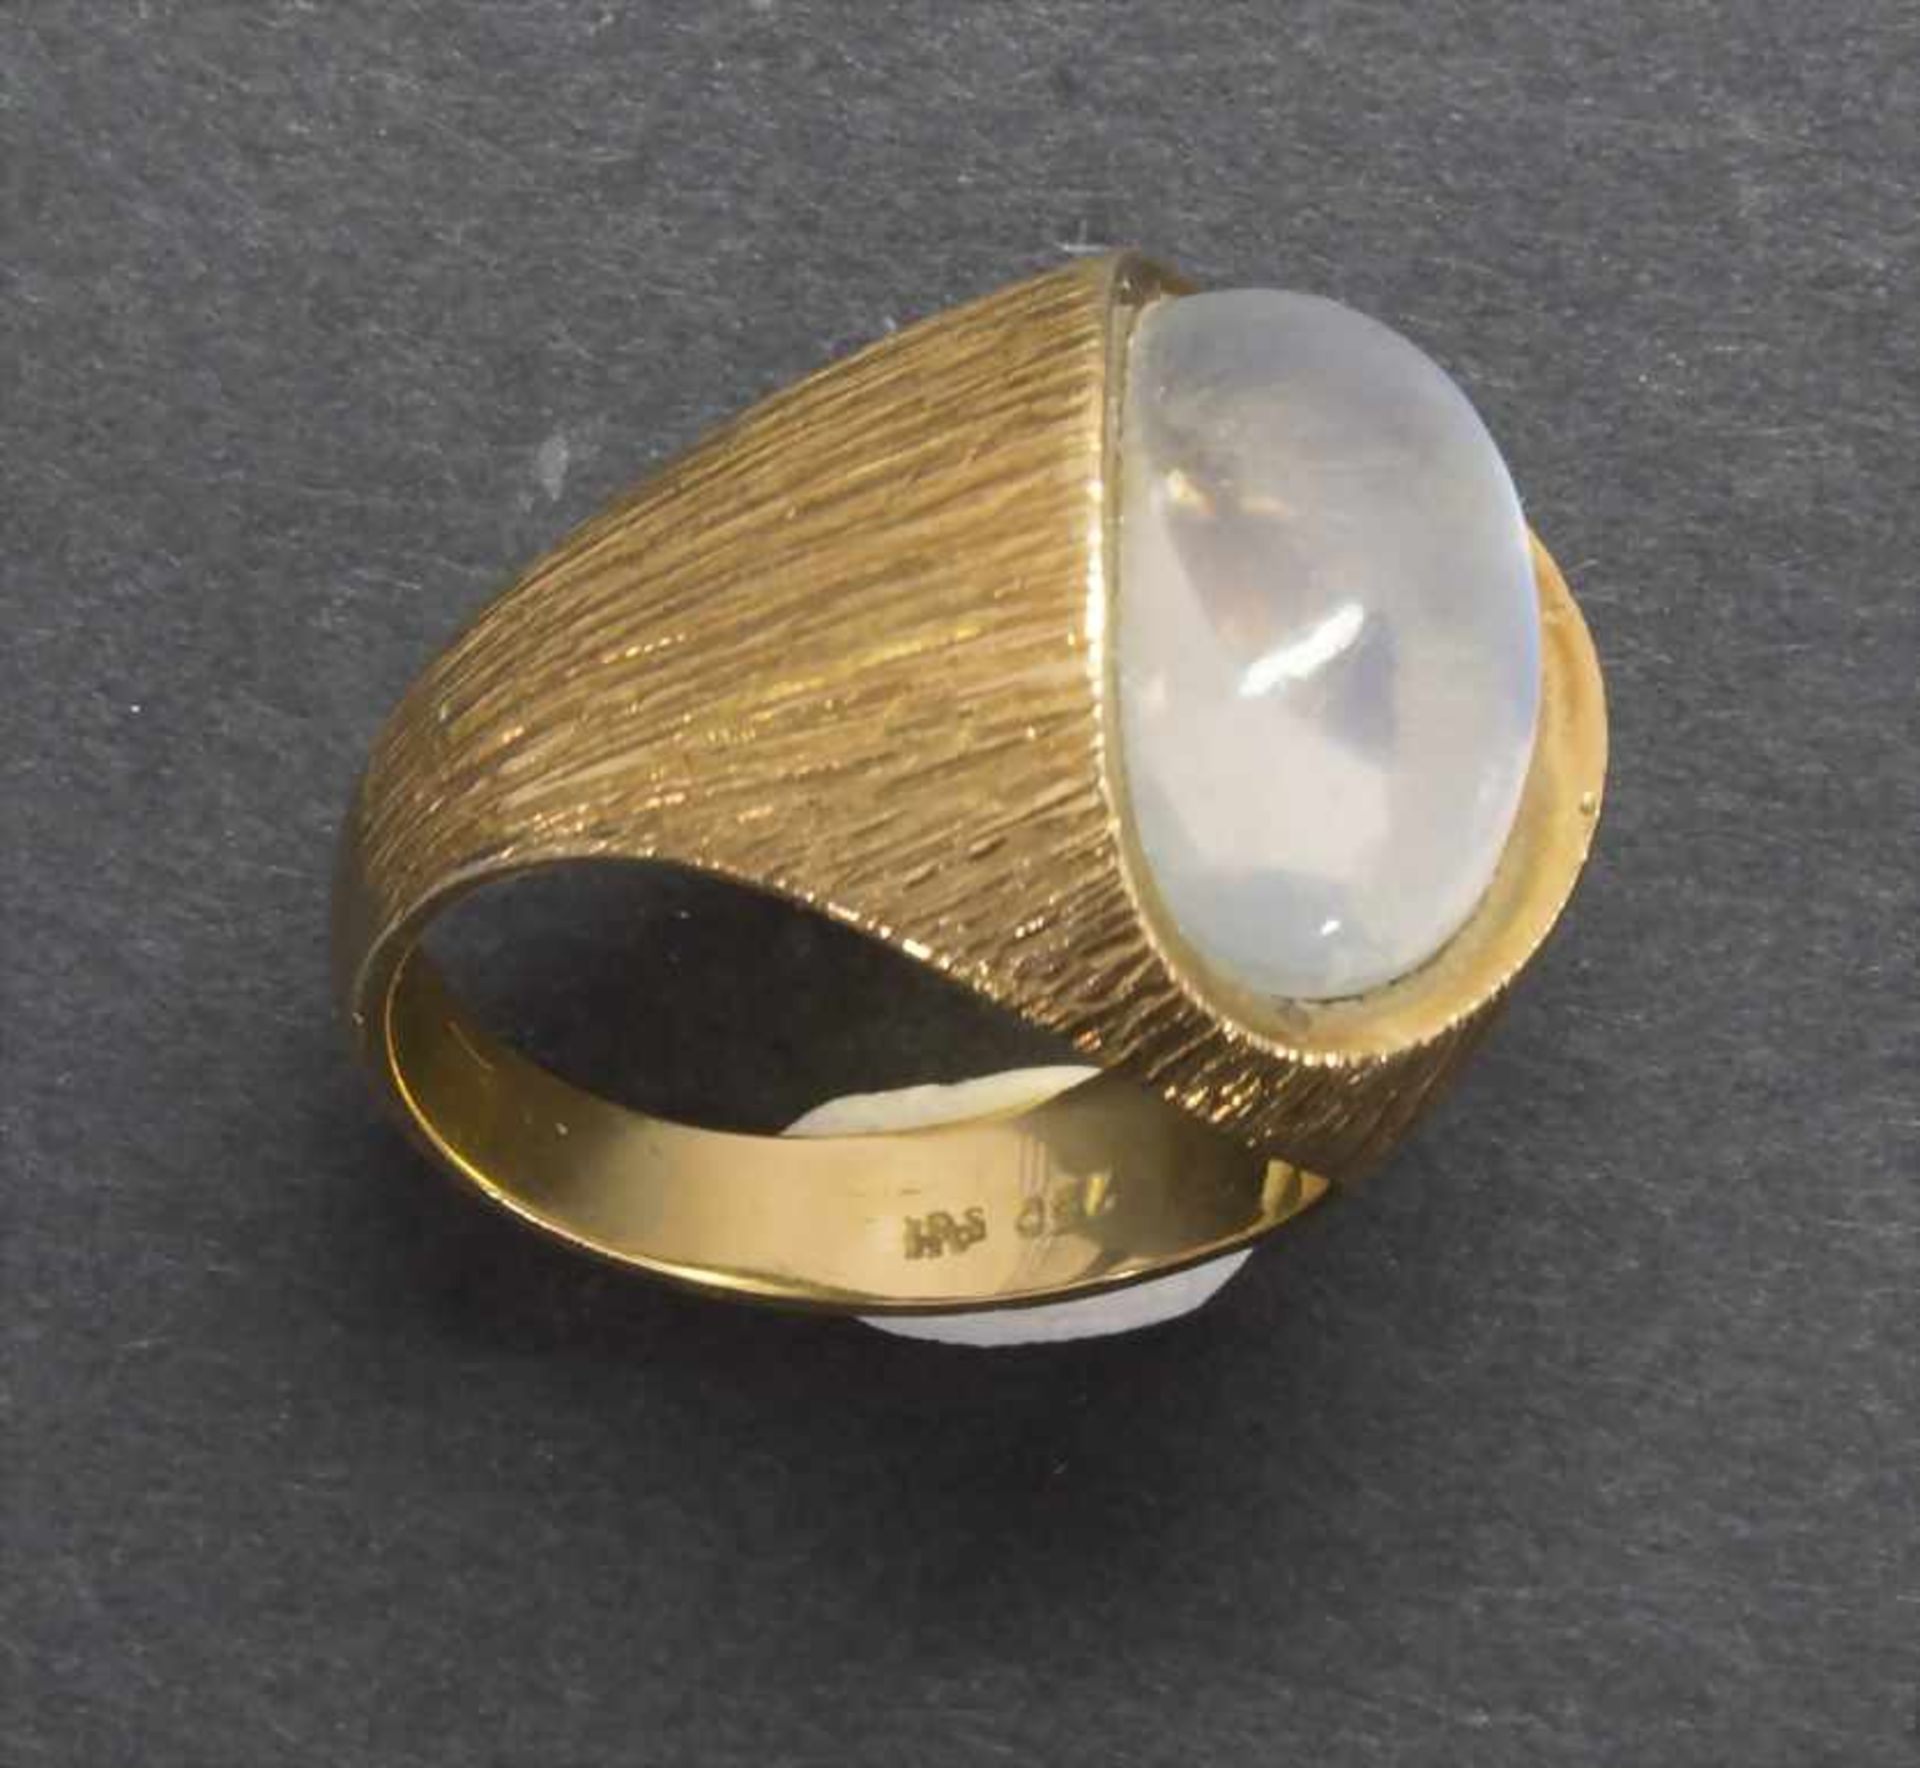 Damenring mit Mondstein / A ladies ring with moonstoneMaterial: Gelbgold 750/000 18 Kt, Mondstein, - Bild 3 aus 4